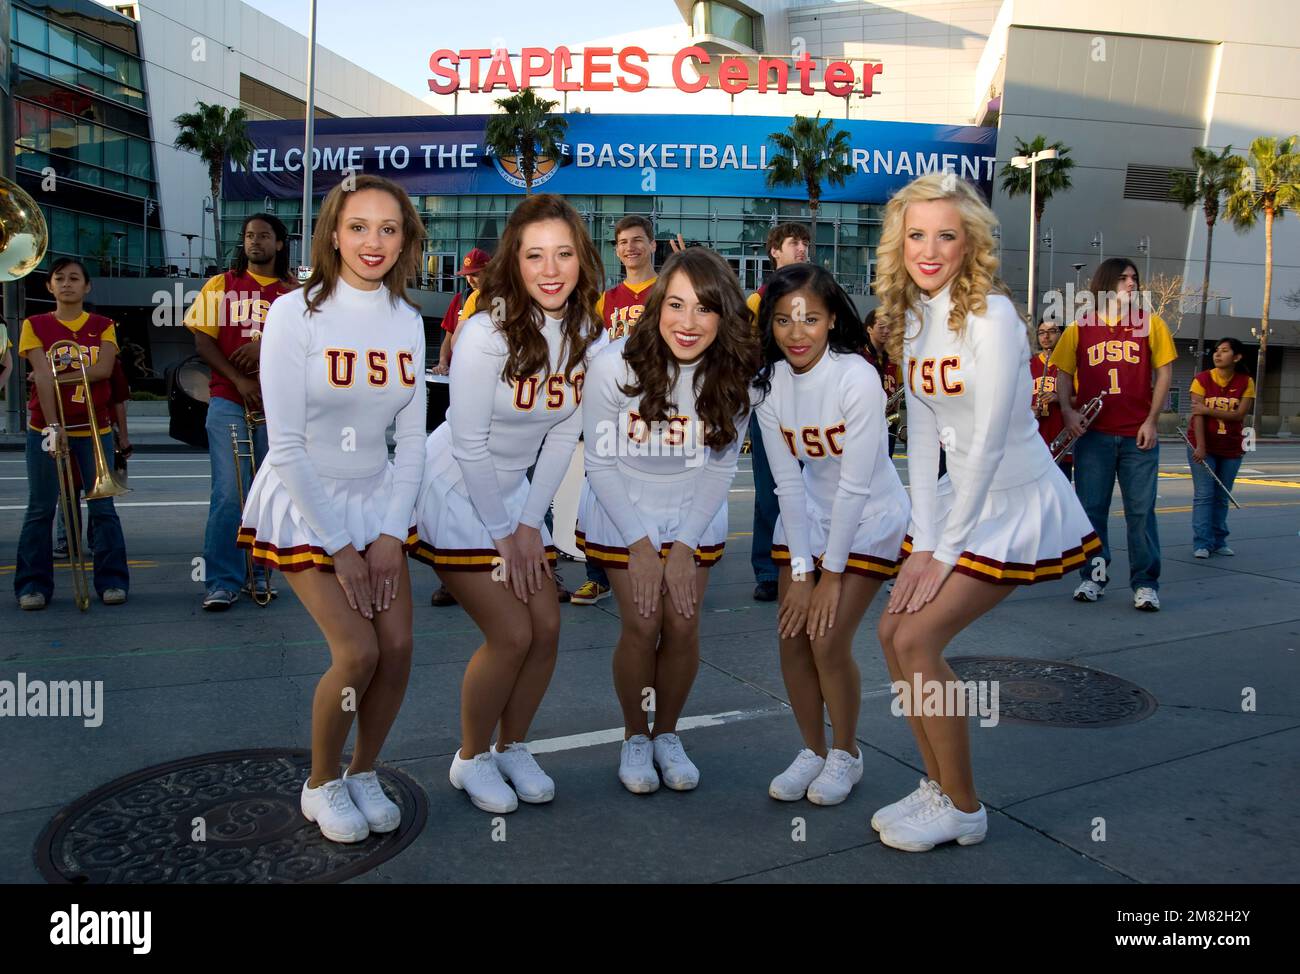 Les cheerleaders de l'USC, l'Université de Californie du Sud, apparaissent lors d'un événement à L.A. Vivez à l'Downtwon Los Angeles, CA, États-Unis Banque D'Images